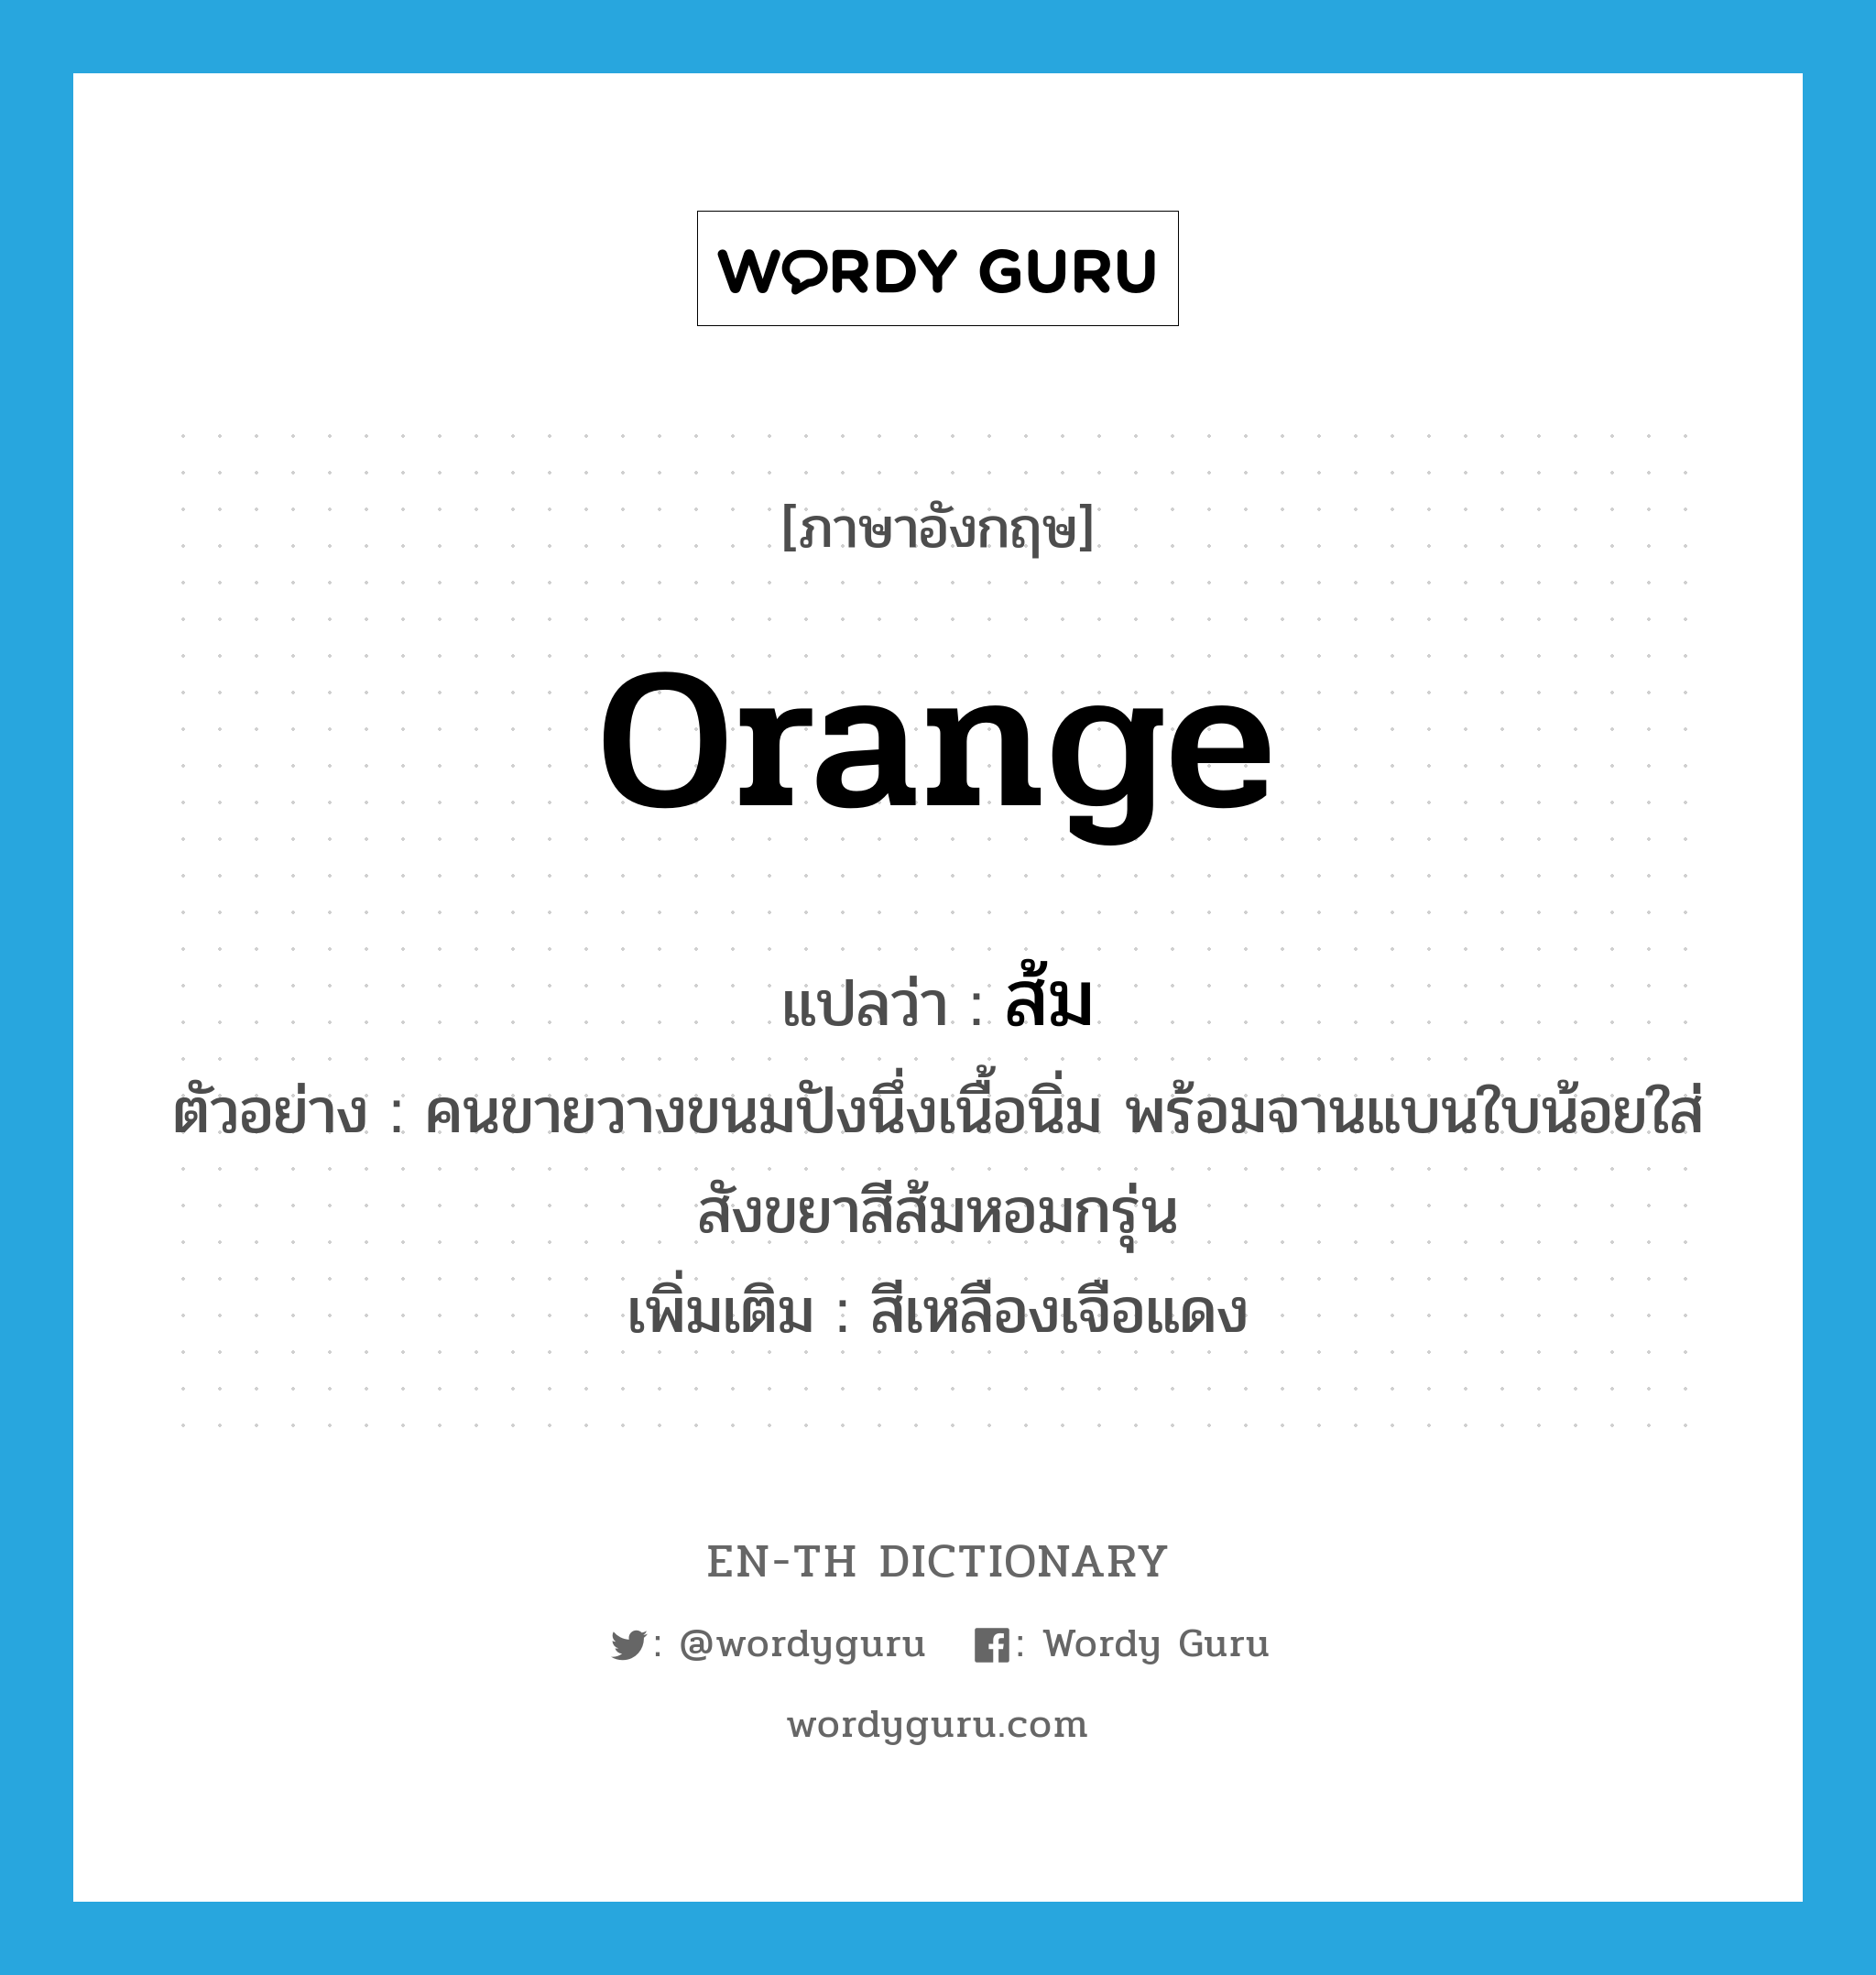 orange แปลว่า?, คำศัพท์ภาษาอังกฤษ orange แปลว่า ส้ม ประเภท ADJ ตัวอย่าง คนขายวางขนมปังนึ่งเนื้อนิ่ม พร้อมจานแบนใบน้อยใส่สังขยาสีส้มหอมกรุ่น เพิ่มเติม สีเหลืองเจือแดง หมวด ADJ